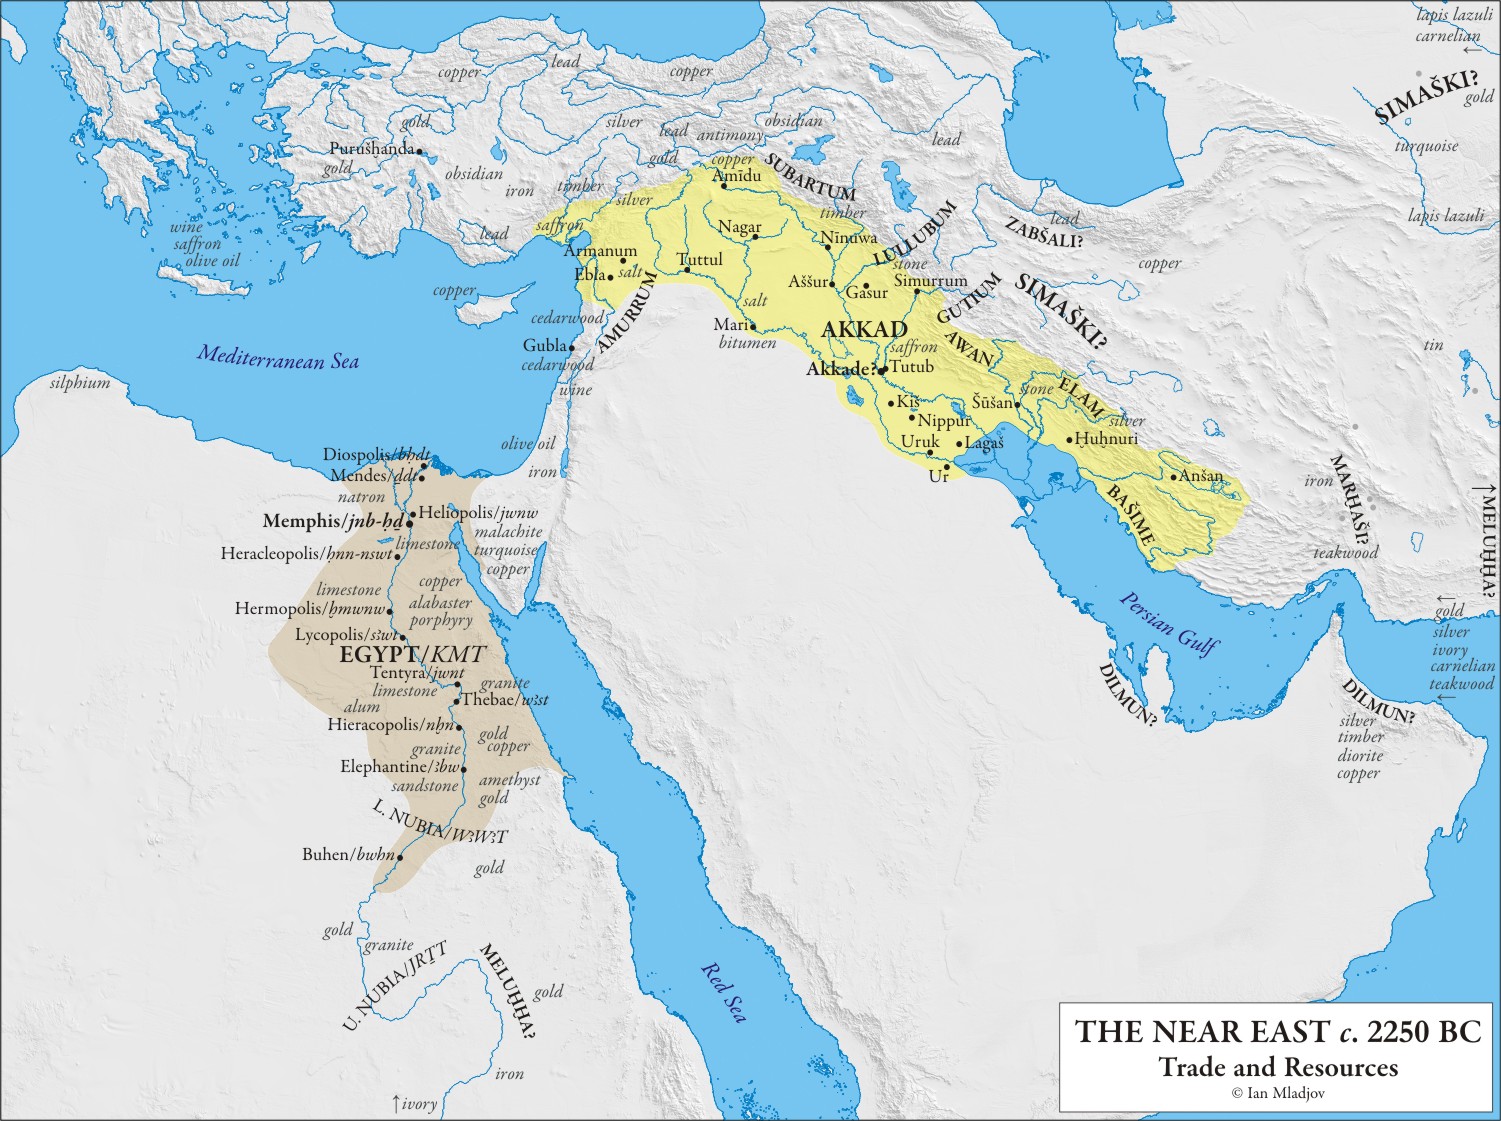 ano 2250 BC trade